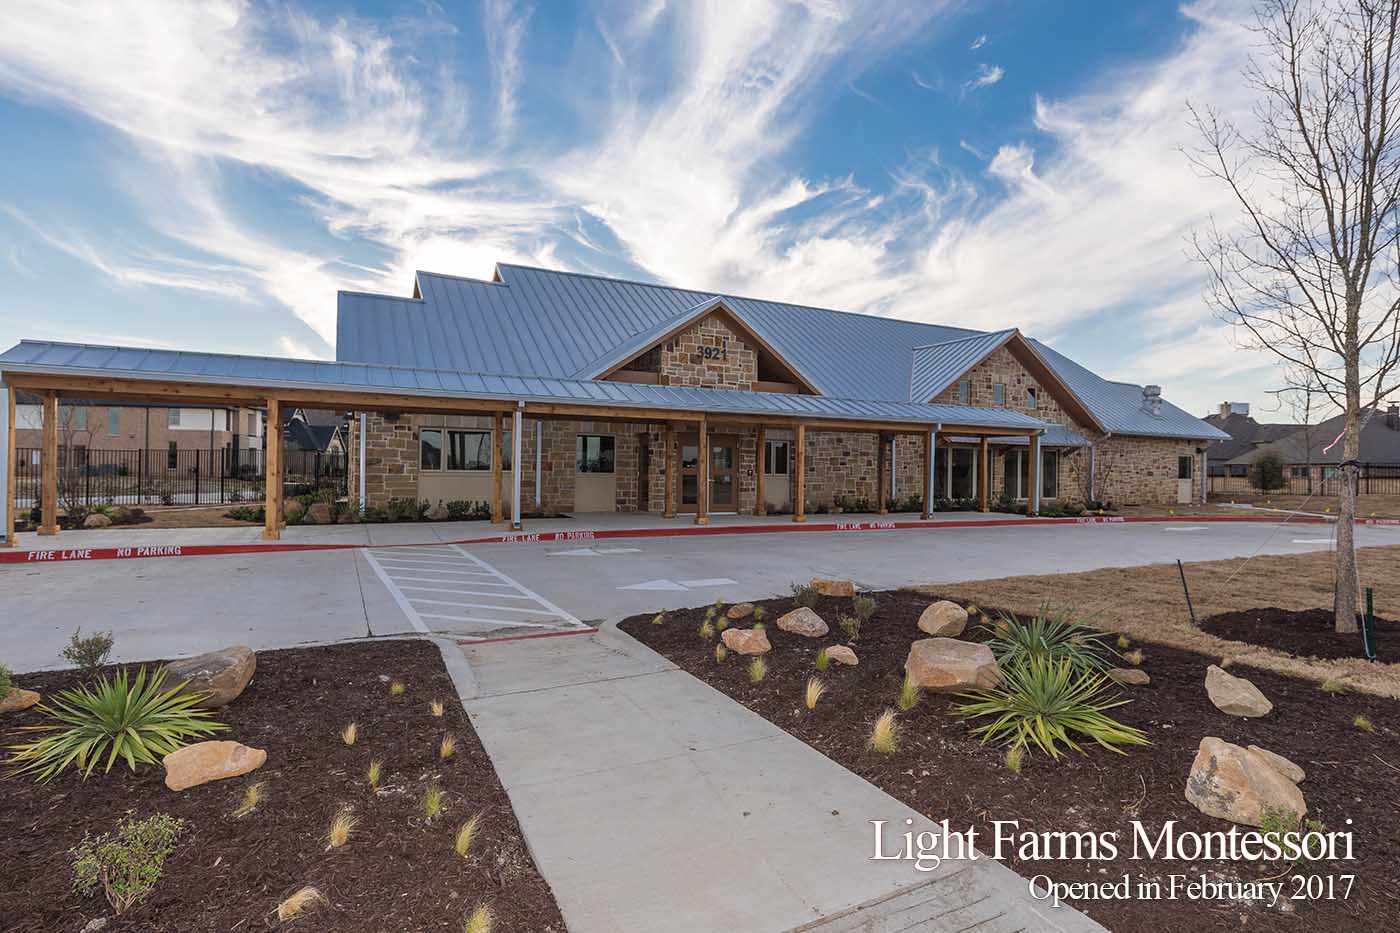 Light Farms Montessori School Opened in February 2017